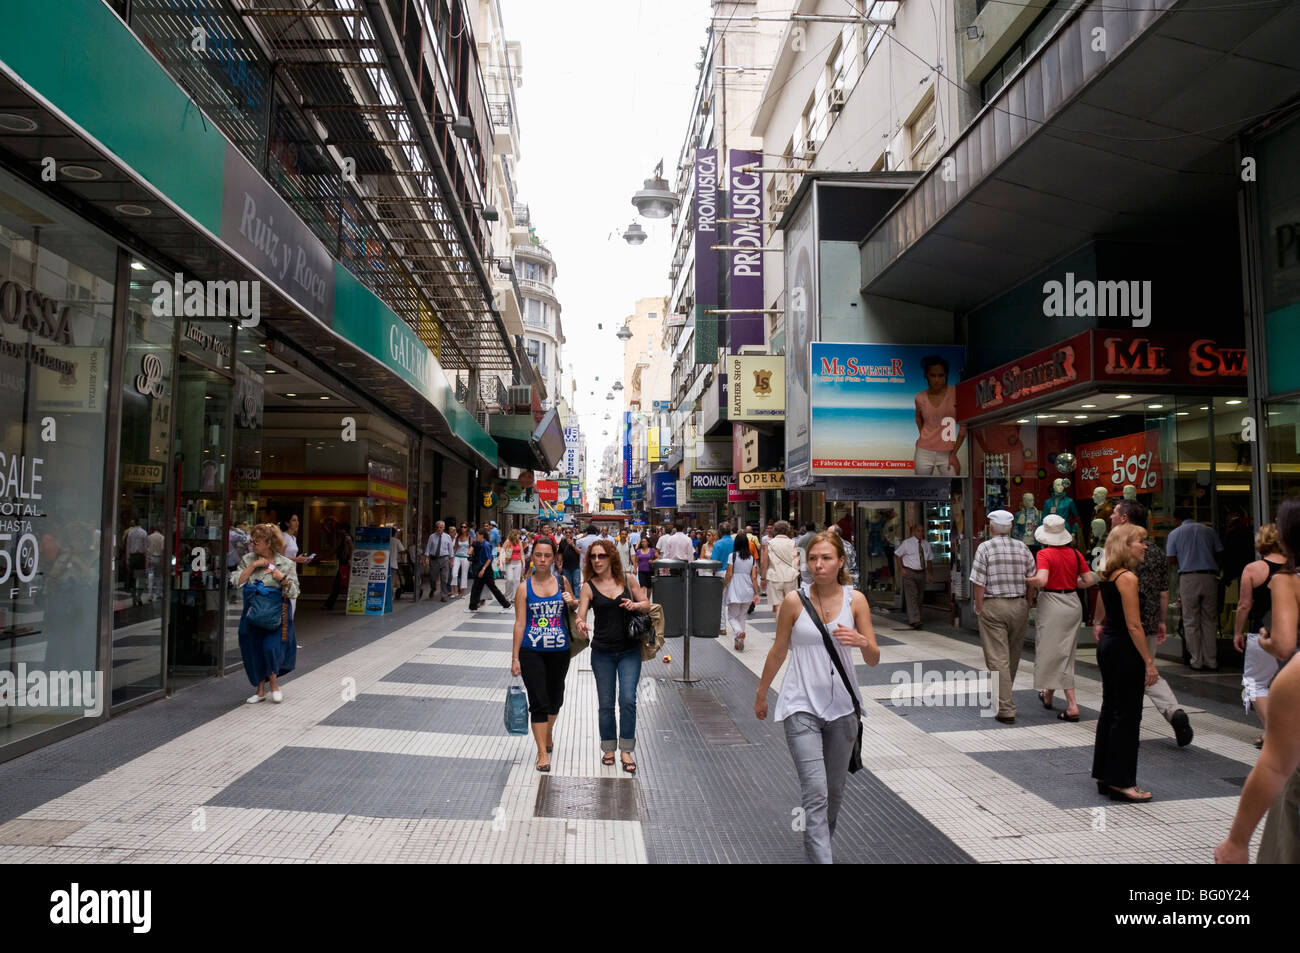 Florida eine berühmte Einkaufsstraße in Buenos Aires, Argentinien, Südamerika Stockfoto